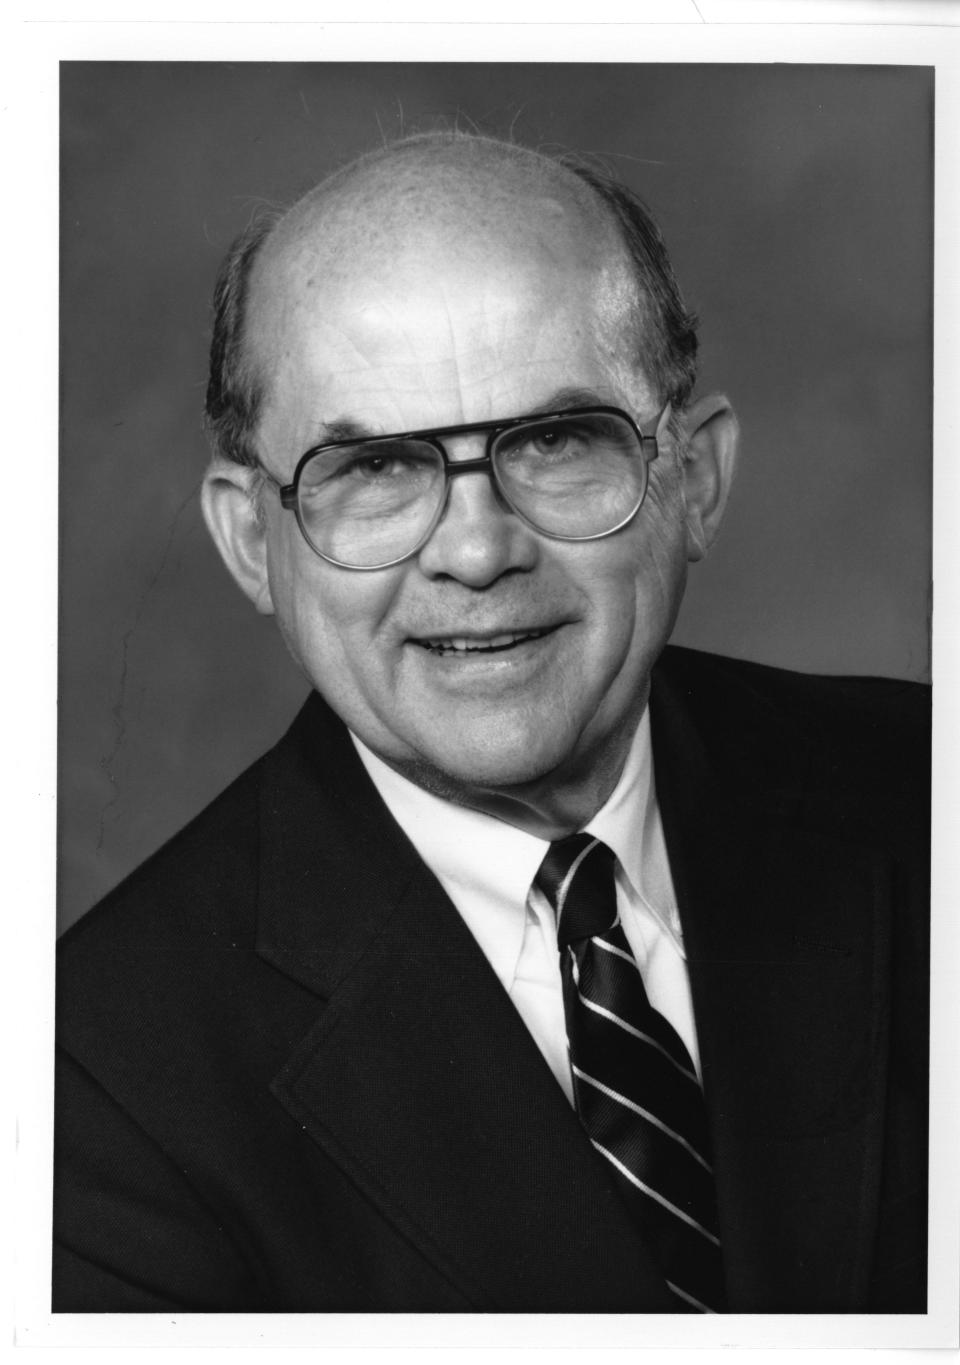 Dr. Joseph “Joe” Johnson, UT president emeritus